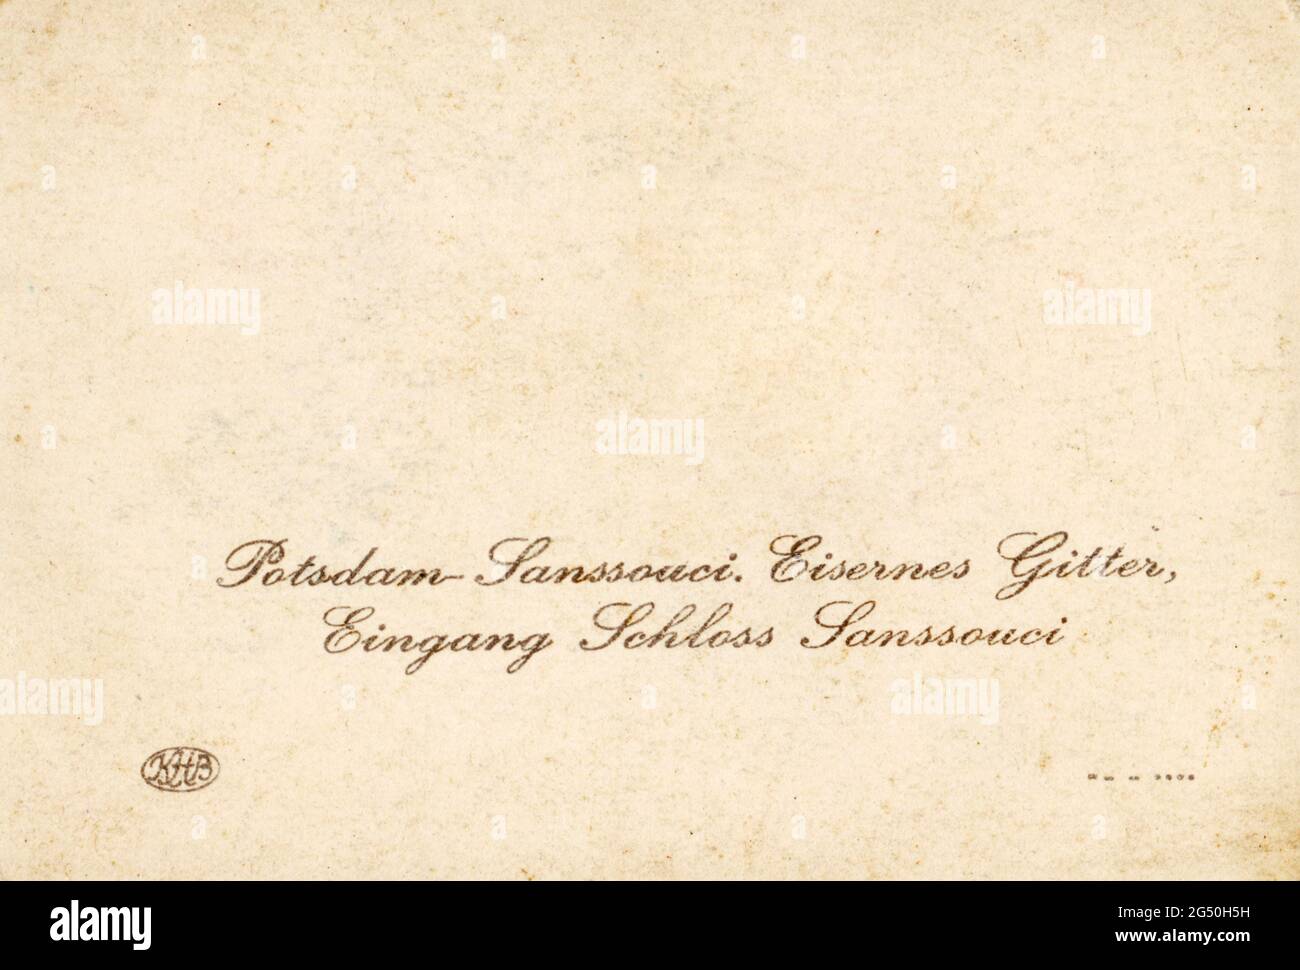 Inscription: Potsdam-Sanssouci. Eisernes gitter, eingang Schloss Sanssouci. Potsdam sans-souci. Grille de fer, entrée du château de Sanssouci. Verso de l'ancienne photo Banque D'Images